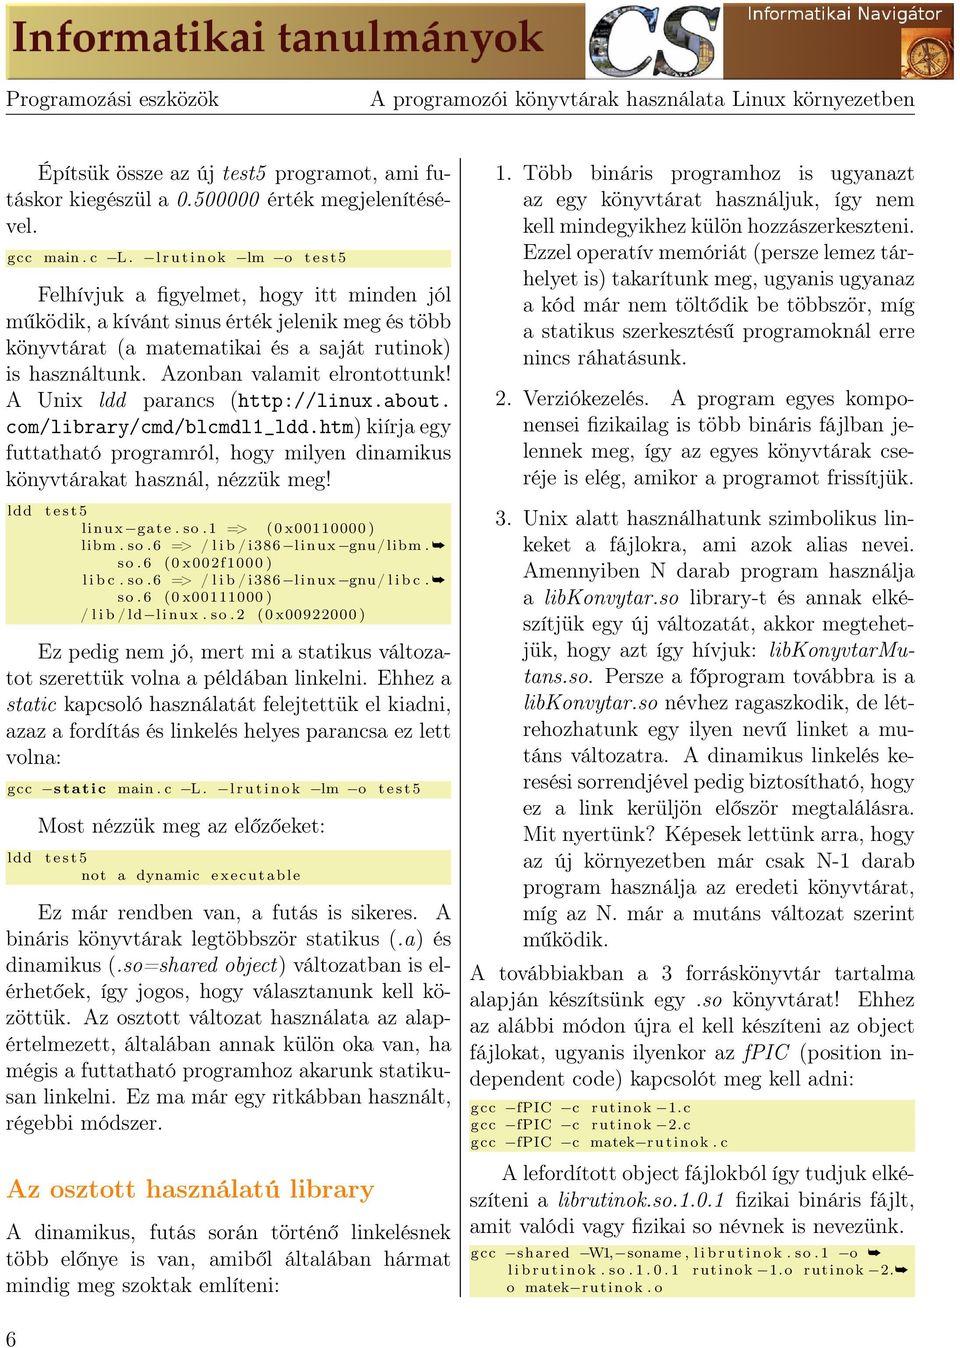 Azonban valamit elrontottunk! A Unix ldd parancs (http://linux.about. com/library/cmd/blcmdl1_ldd.htm) kiírja egy futtatható programról, hogy milyen dinamikus könyvtárakat használ, nézzük meg!